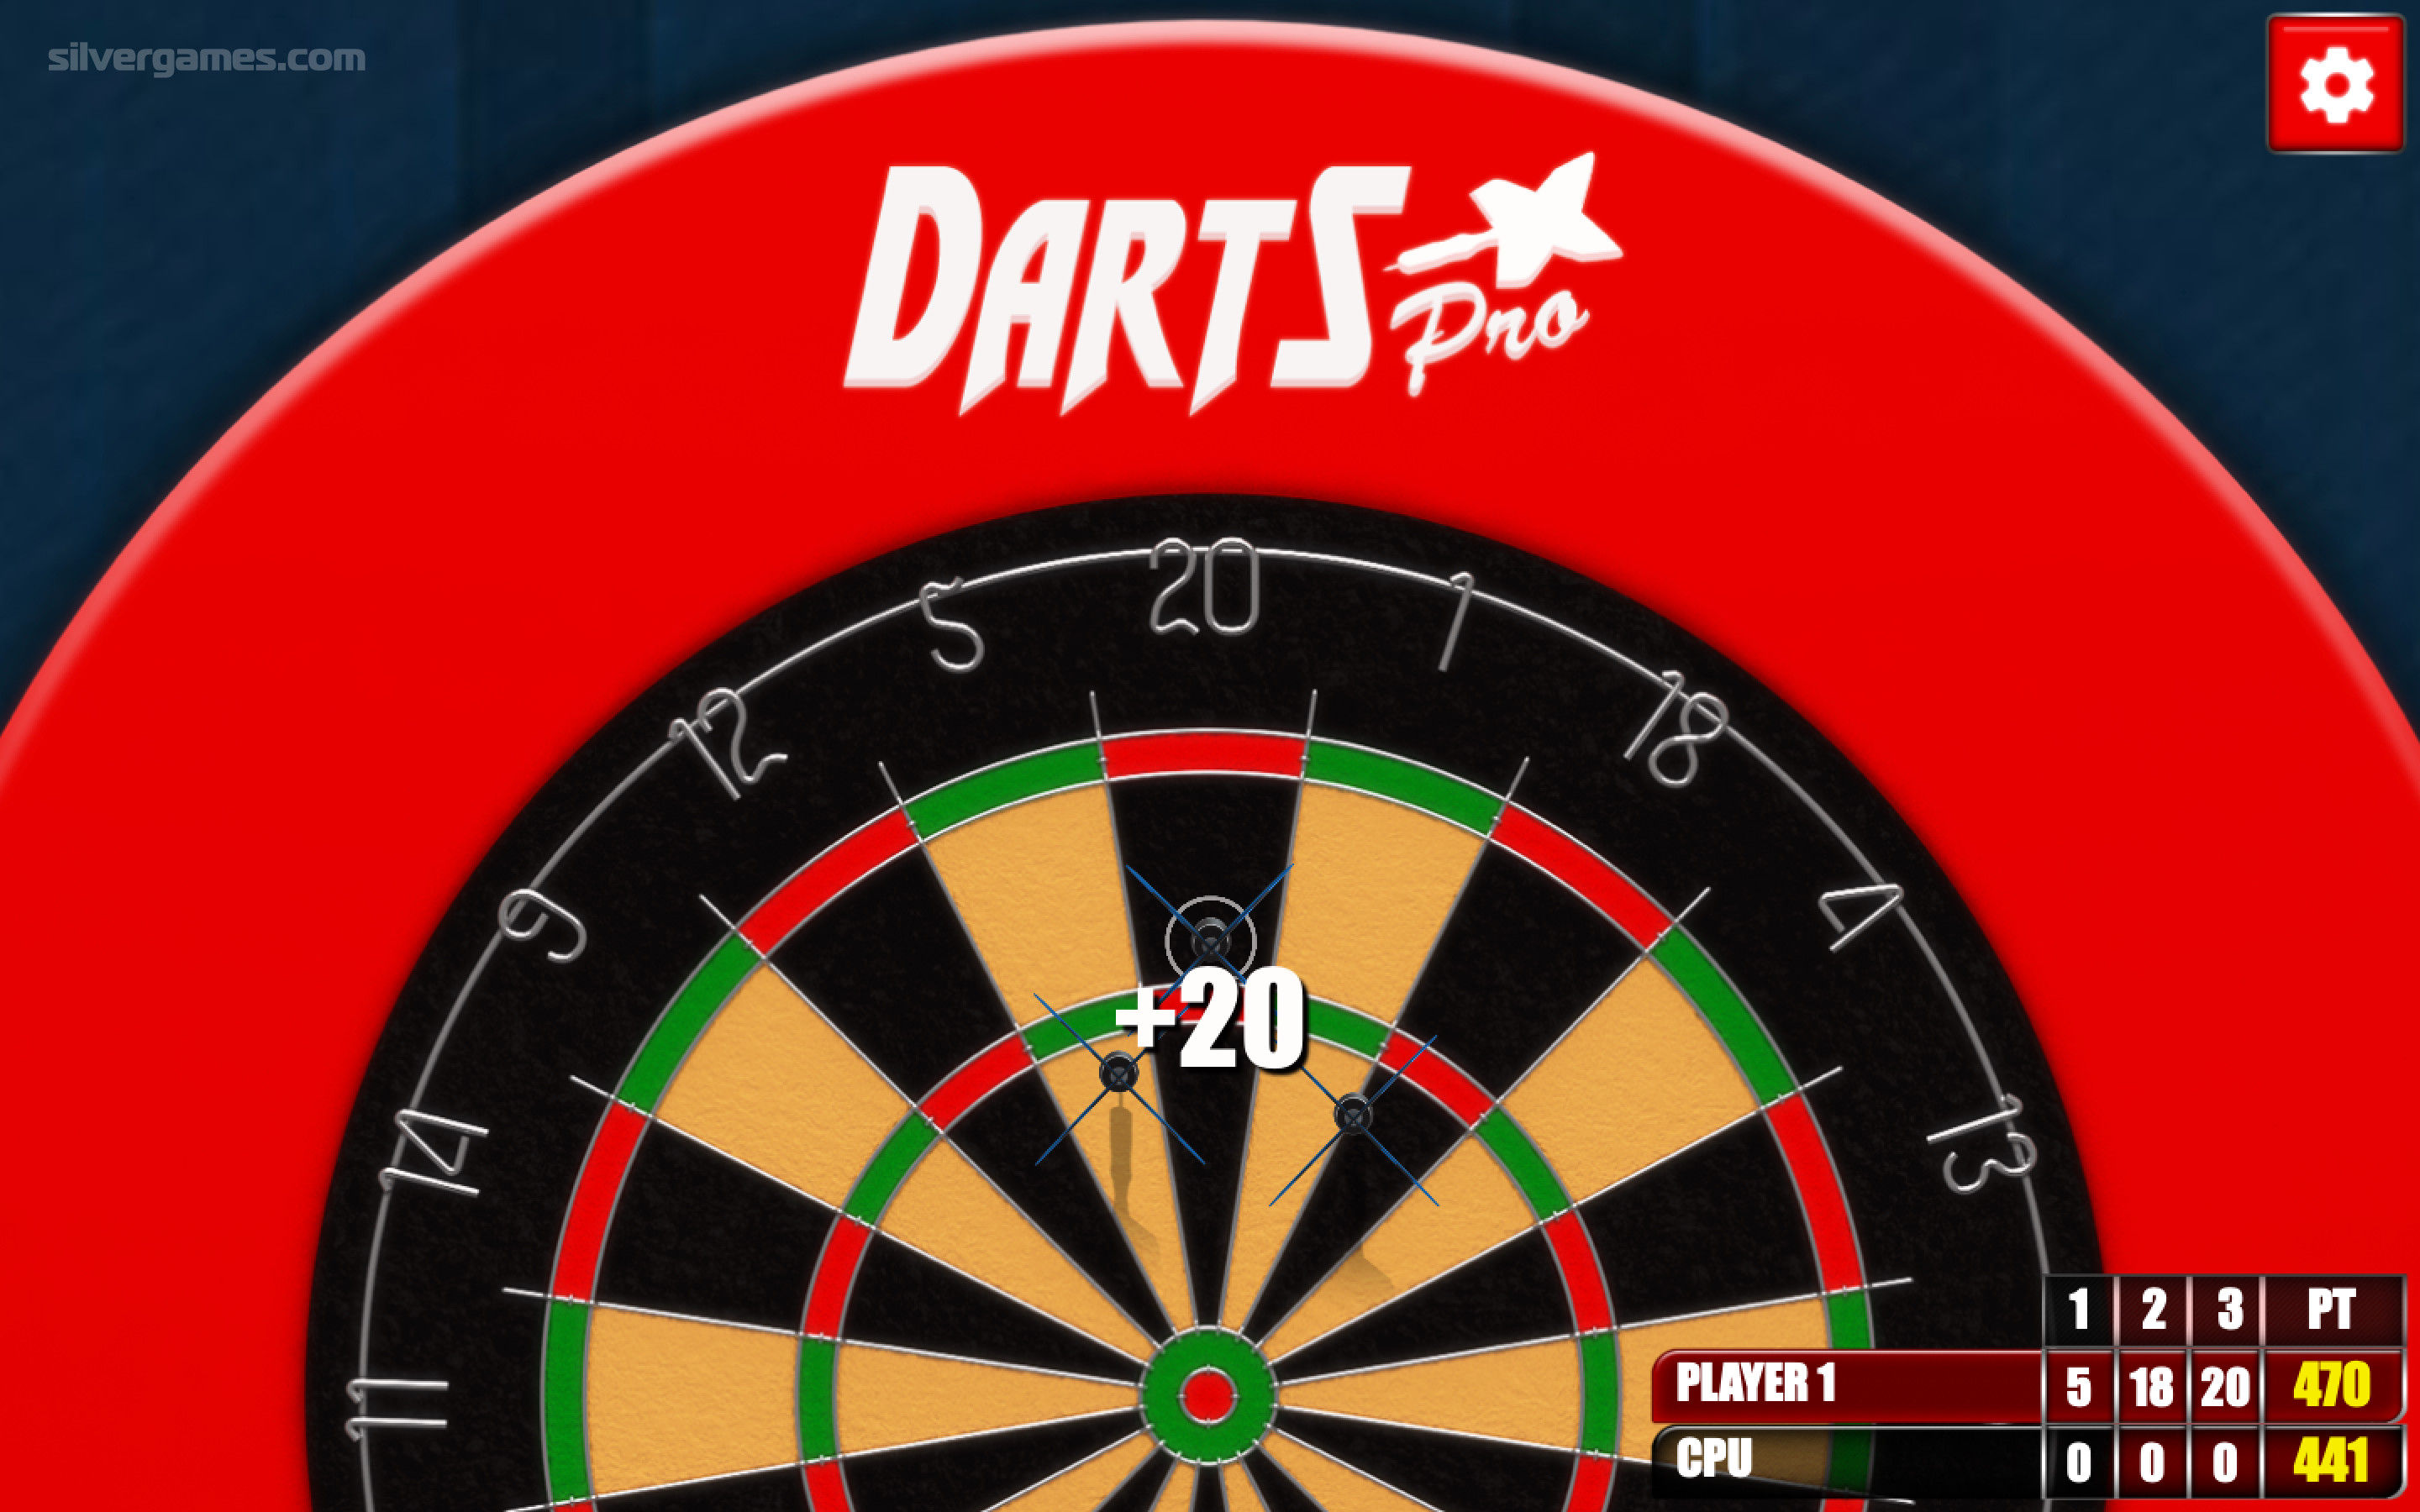 online dart match